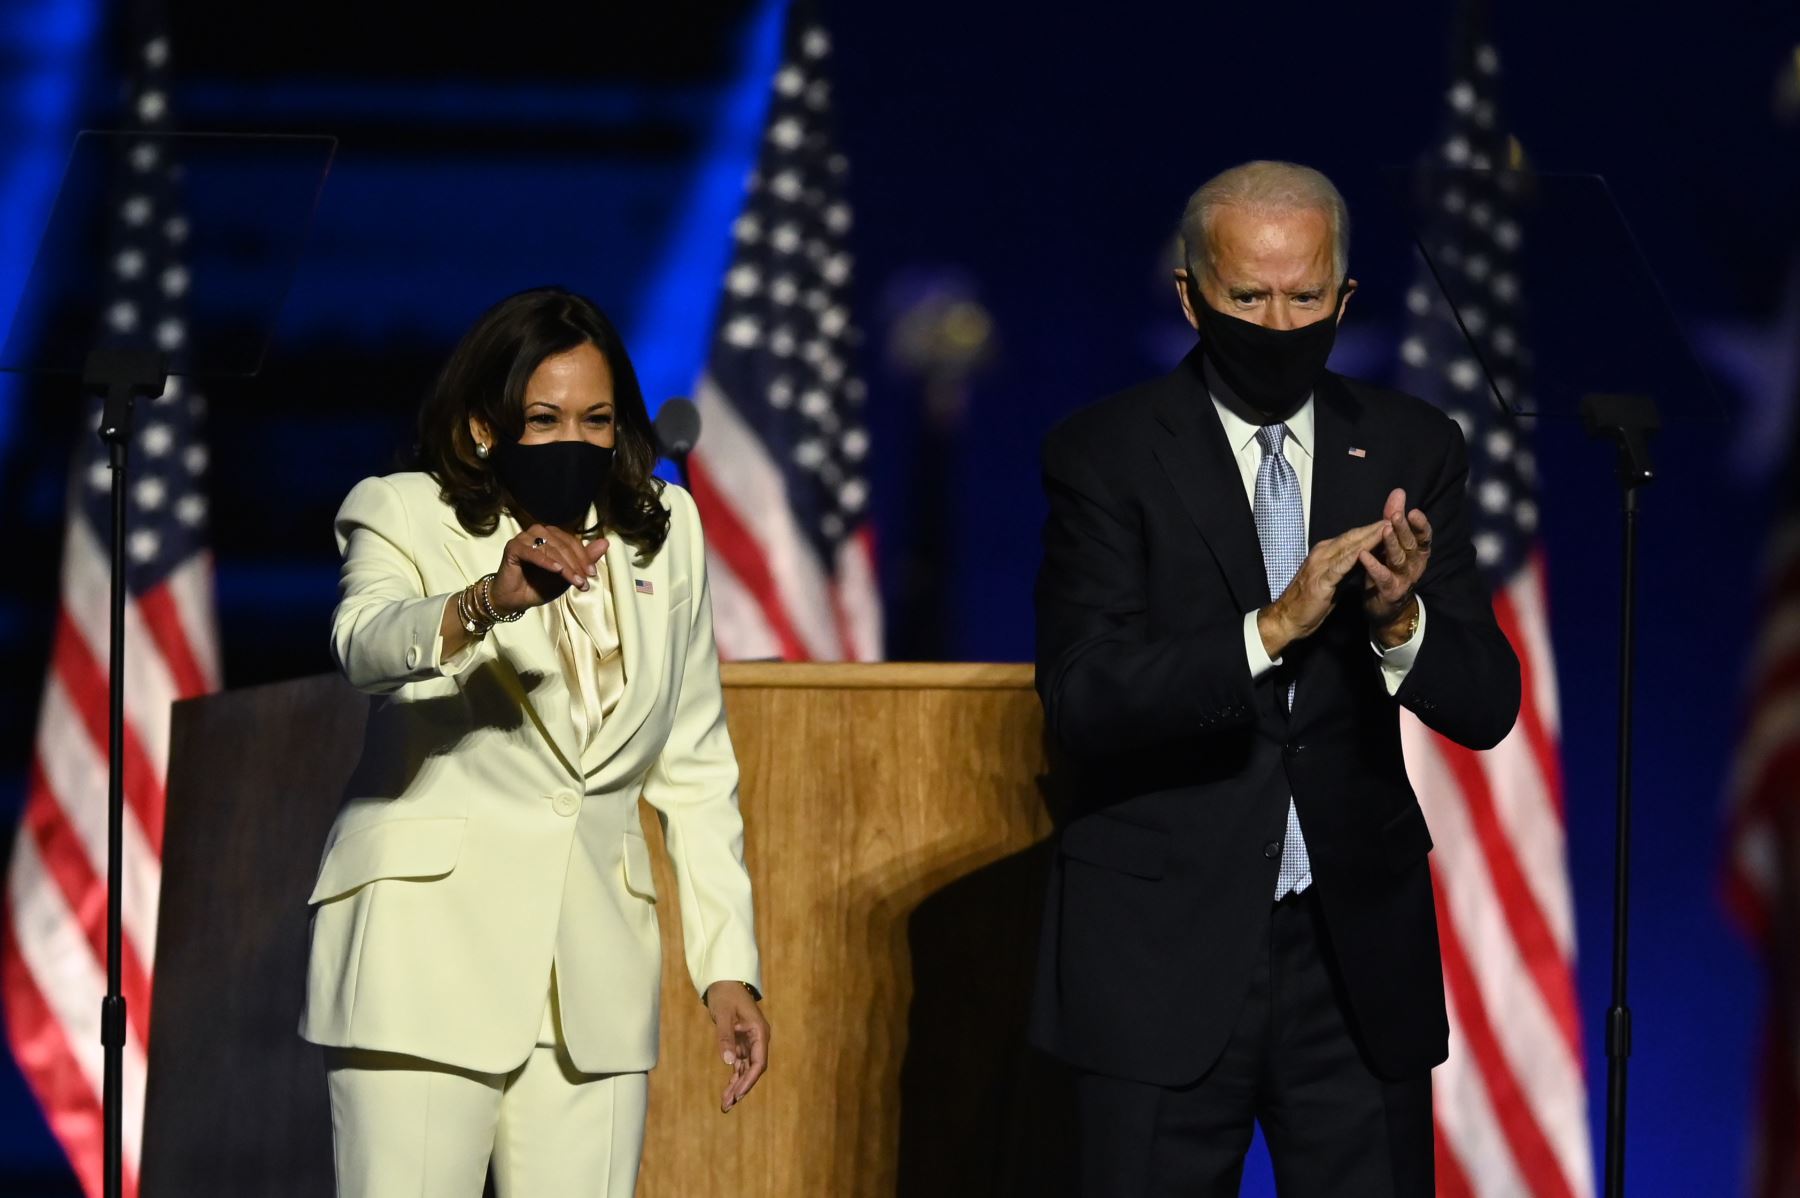 El presidente electo de Estados Unidos, Joe Biden , llega junto a la vicepresidenta electa Kamala Harris para pronunciar sus comentarios en Wilmington, Delaware, luego de ser declarados ganadores de las elecciones presidenciales.
Foto: AFP